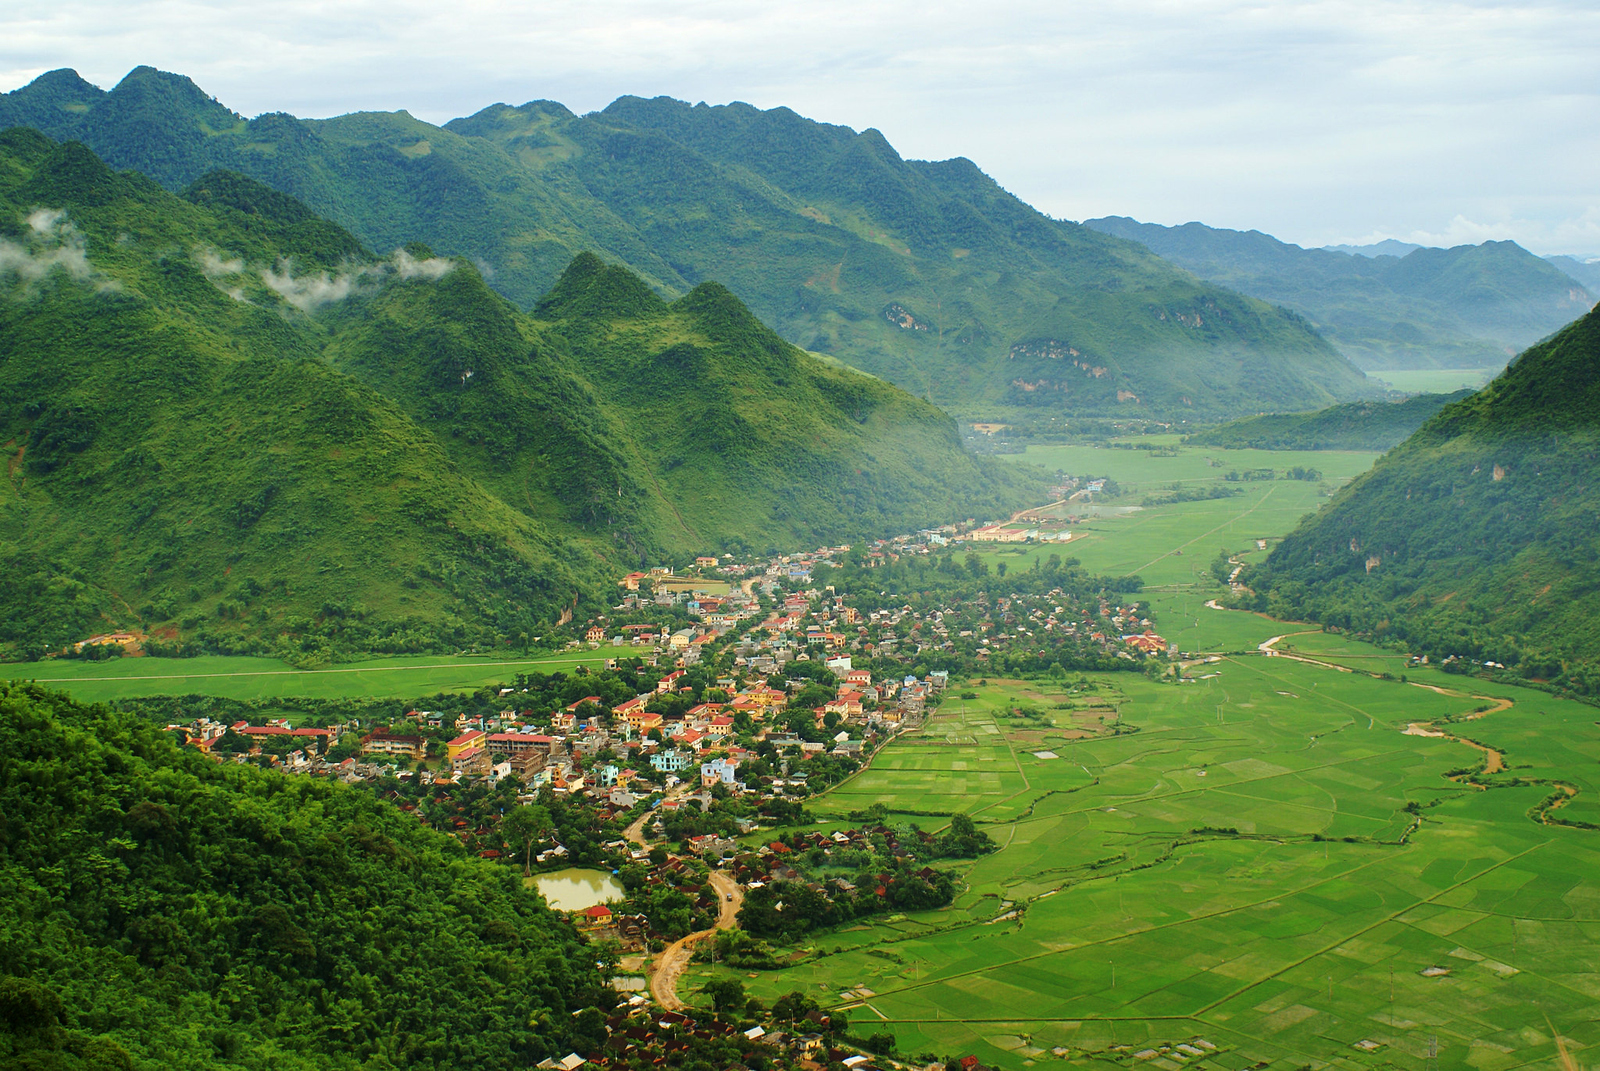 Долина Май Чау окружена зелеными горами, рисовыми полями и небольшими деревнями. Фото: Shutterstock/Джимми Тран